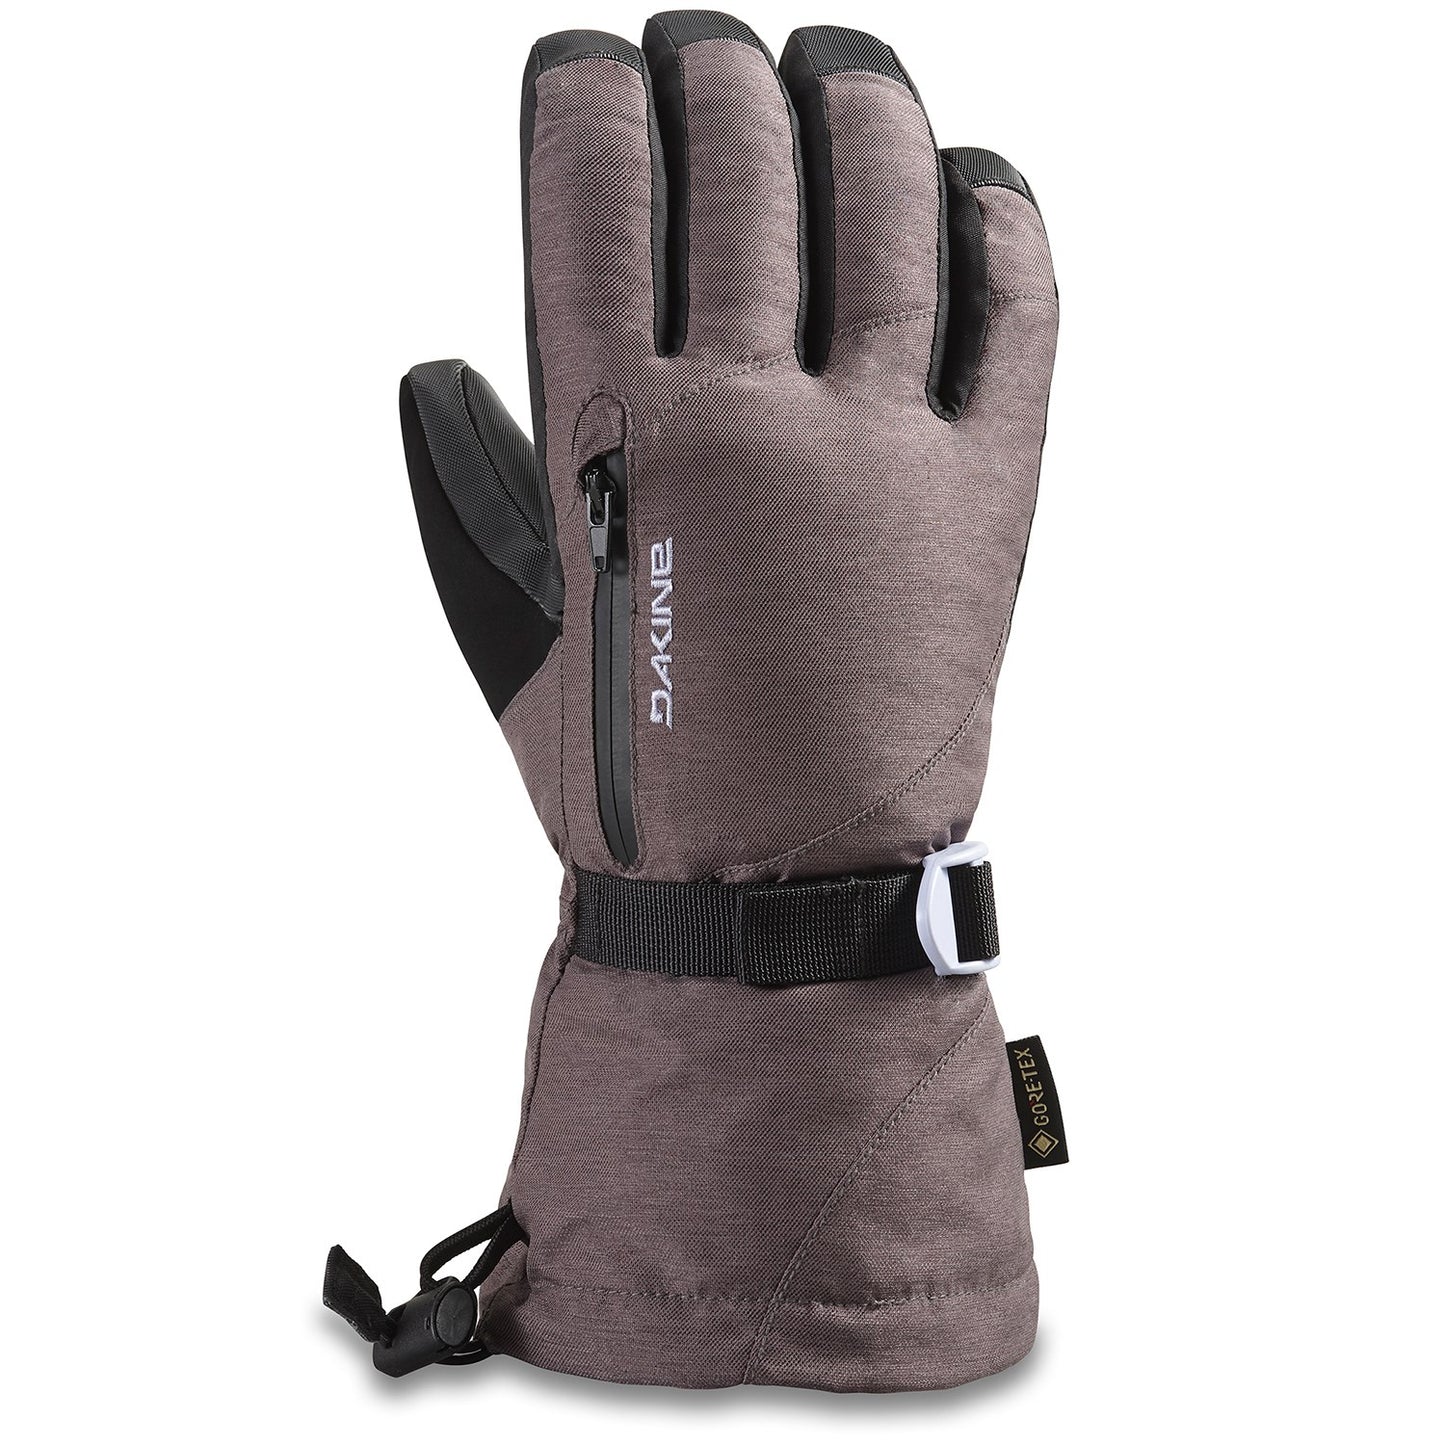 Dakine Sequoia GORE-TEX Gloves - Women's